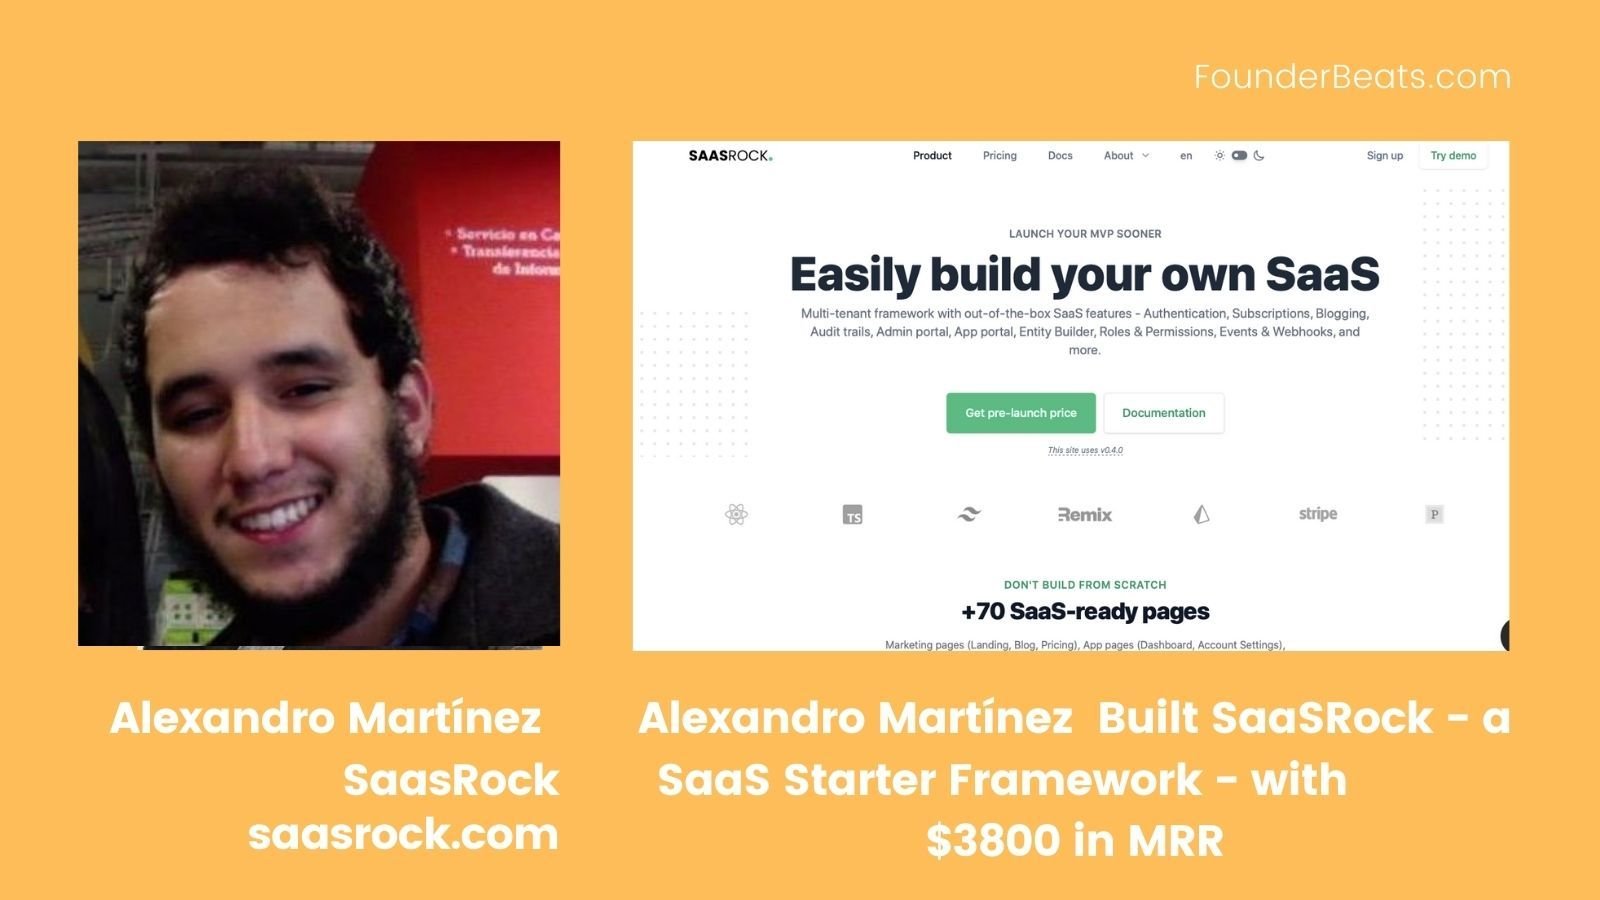 Alexandro Martínez Built SaaSRock - a SaaS Starter Framework - with $3800 in MRR